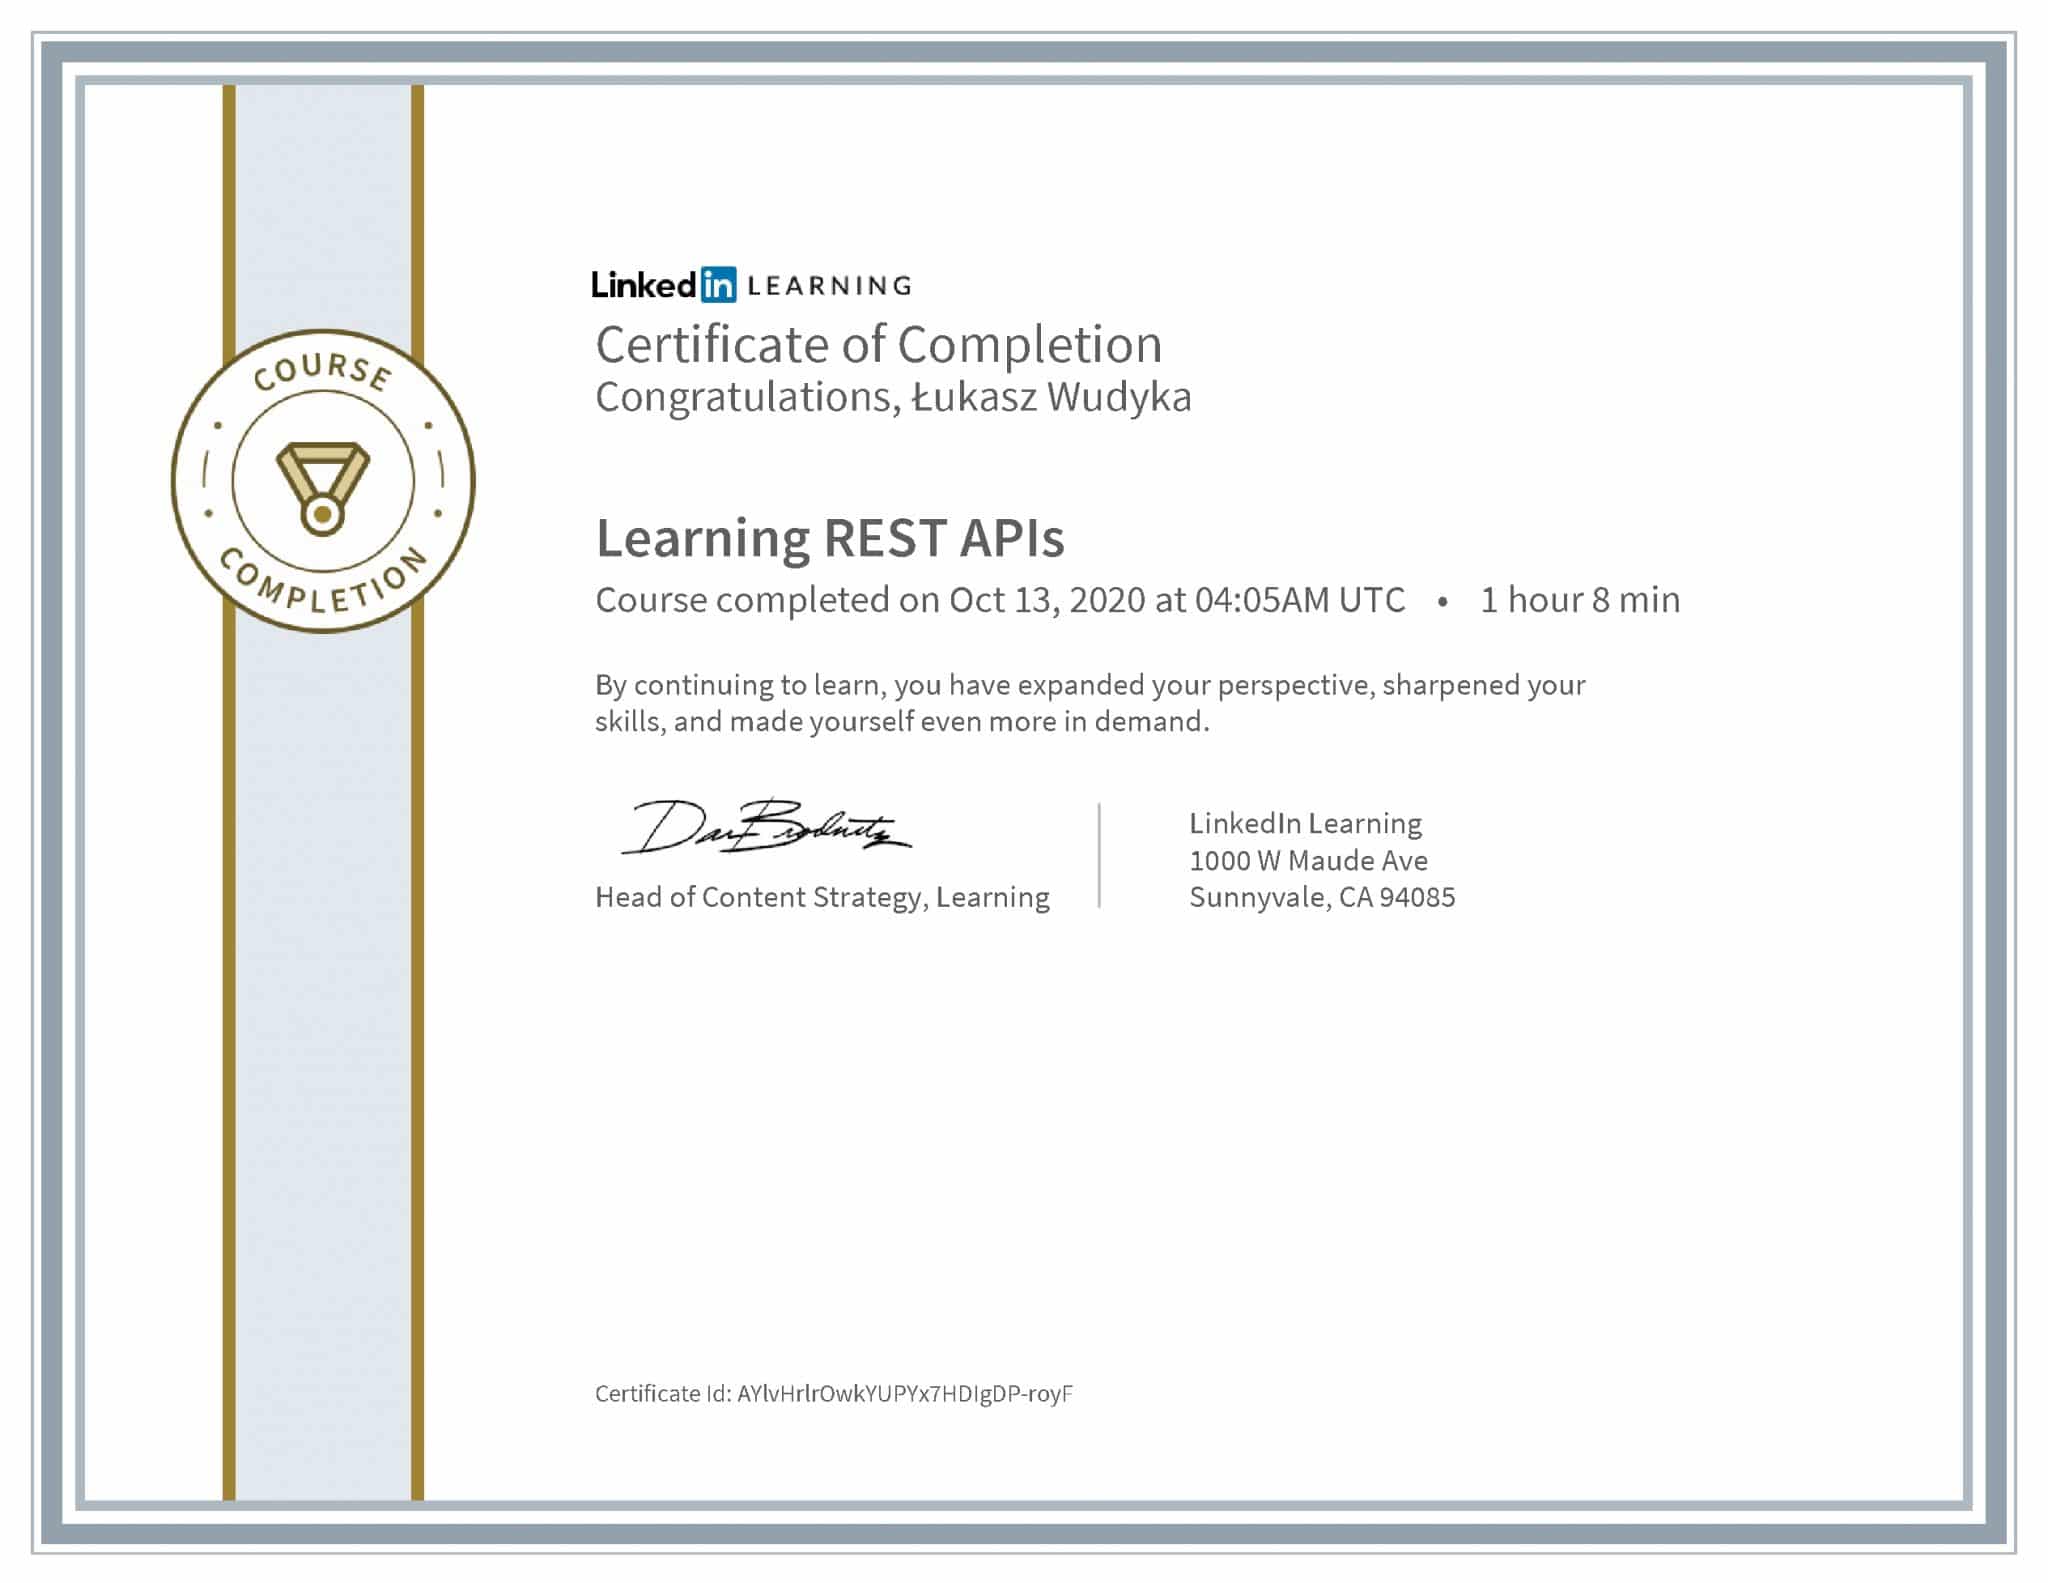 Łukasz Wudyka certyfikat LinkedIn Learning REST APIs